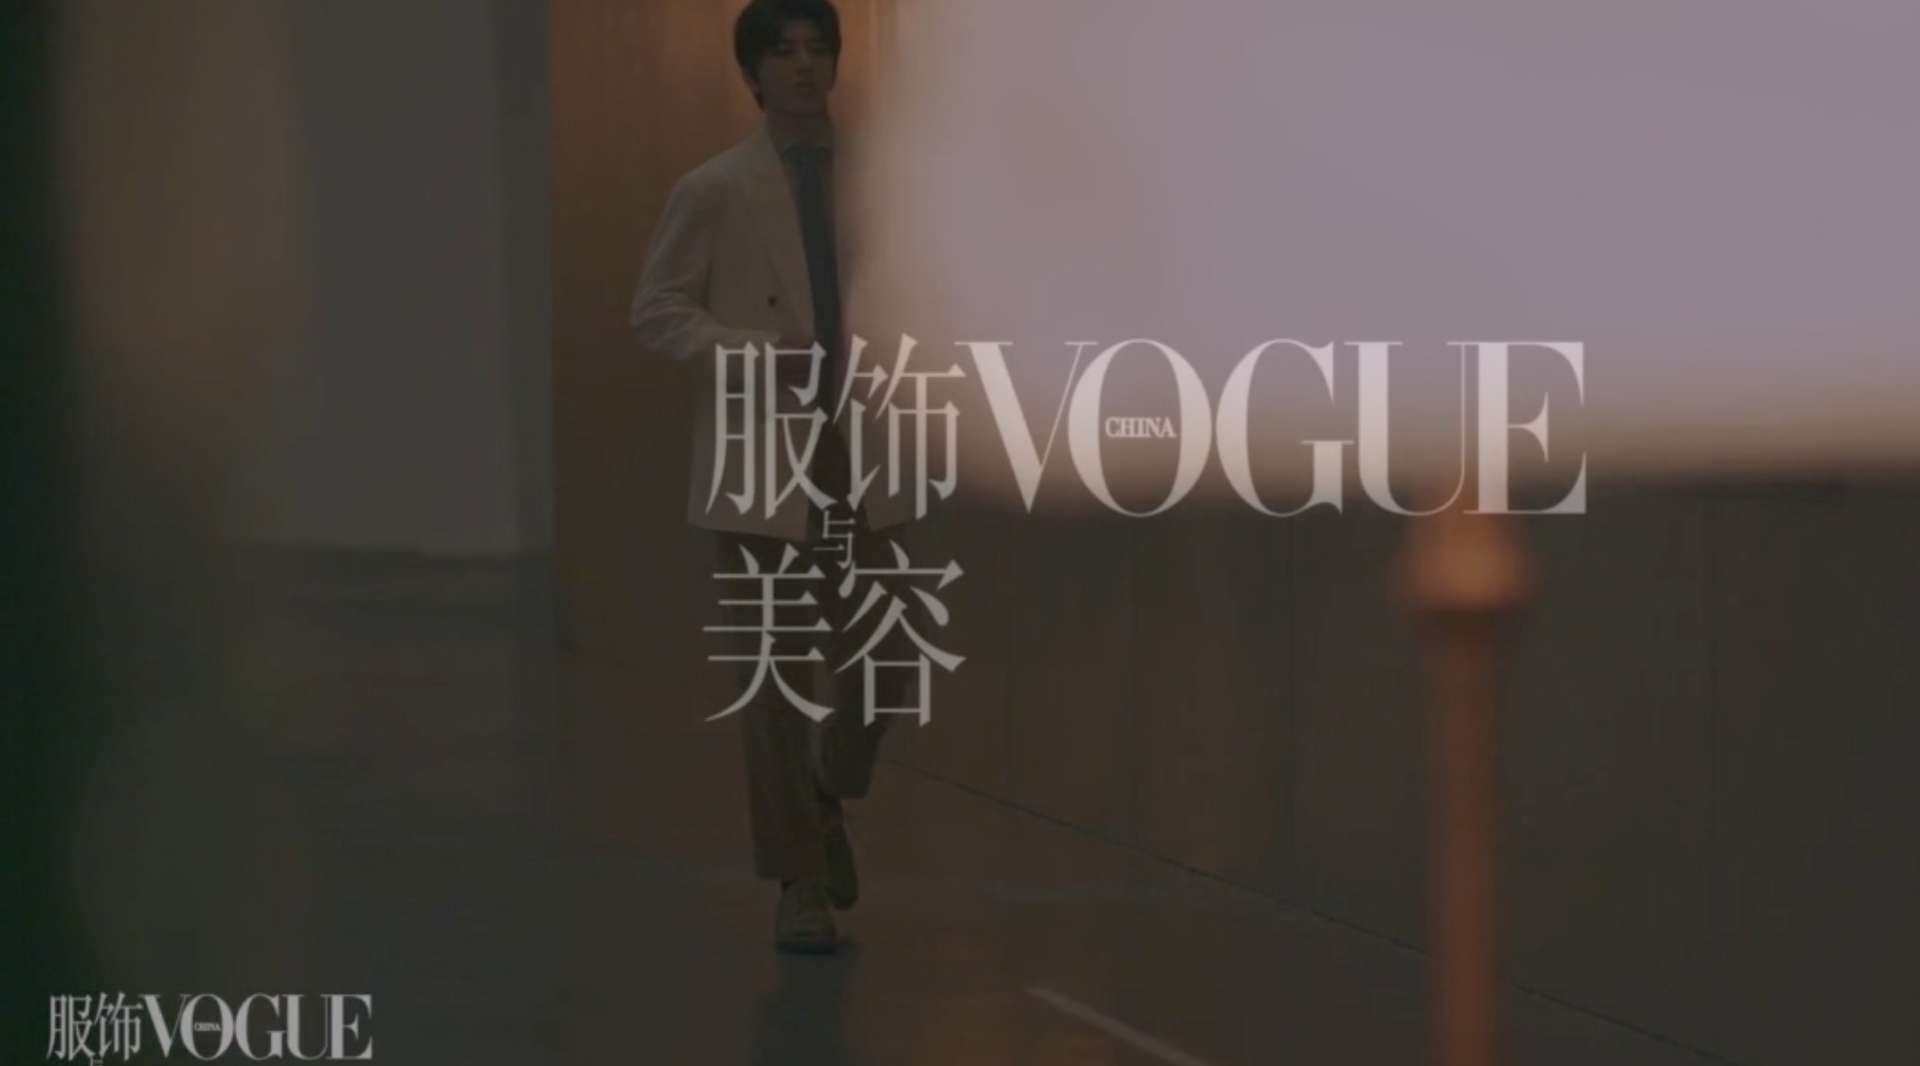 VogueFilm 蔡徐坤走近毕加索《美术馆之夜》BTS